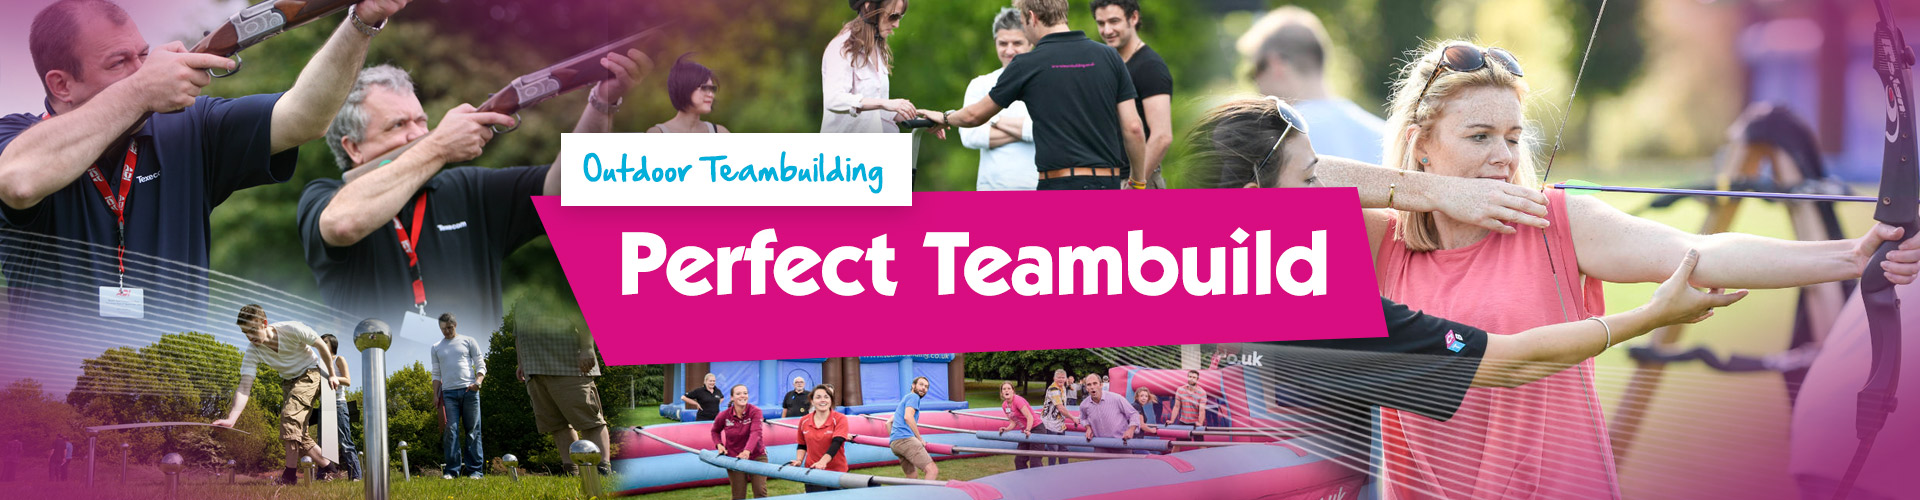 Teambuilding | Perfect Teambuild